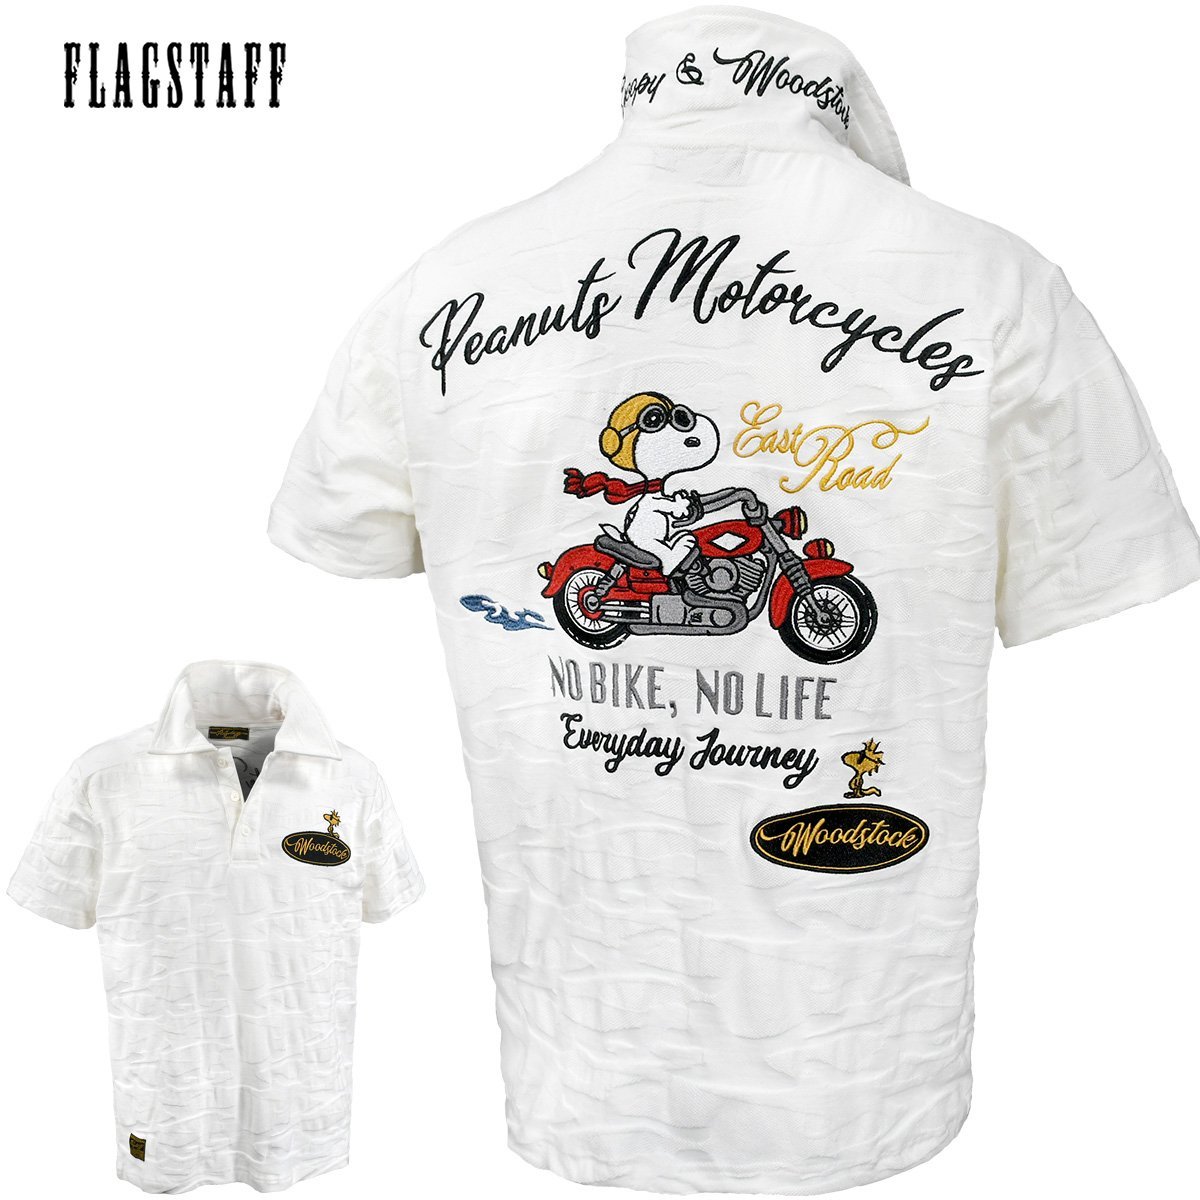 422064-10 FLAG STAFF スヌーピー SNOOPY コラボ 刺繍 ジャガード生地 バイカー バイク 半袖ポロシャツ メンズ(ホワイト白) XL 襟裏ロゴ